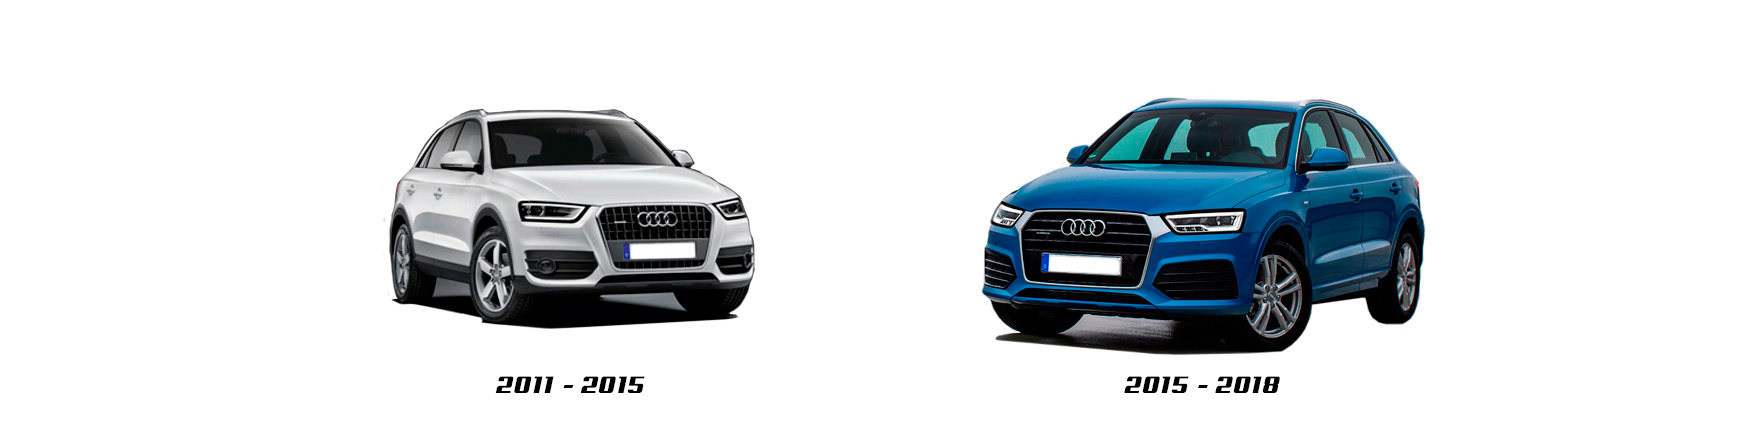 Piezas y Recambios de Audi Q3 (8U) de 2011 a 2015 | Veramauto.es